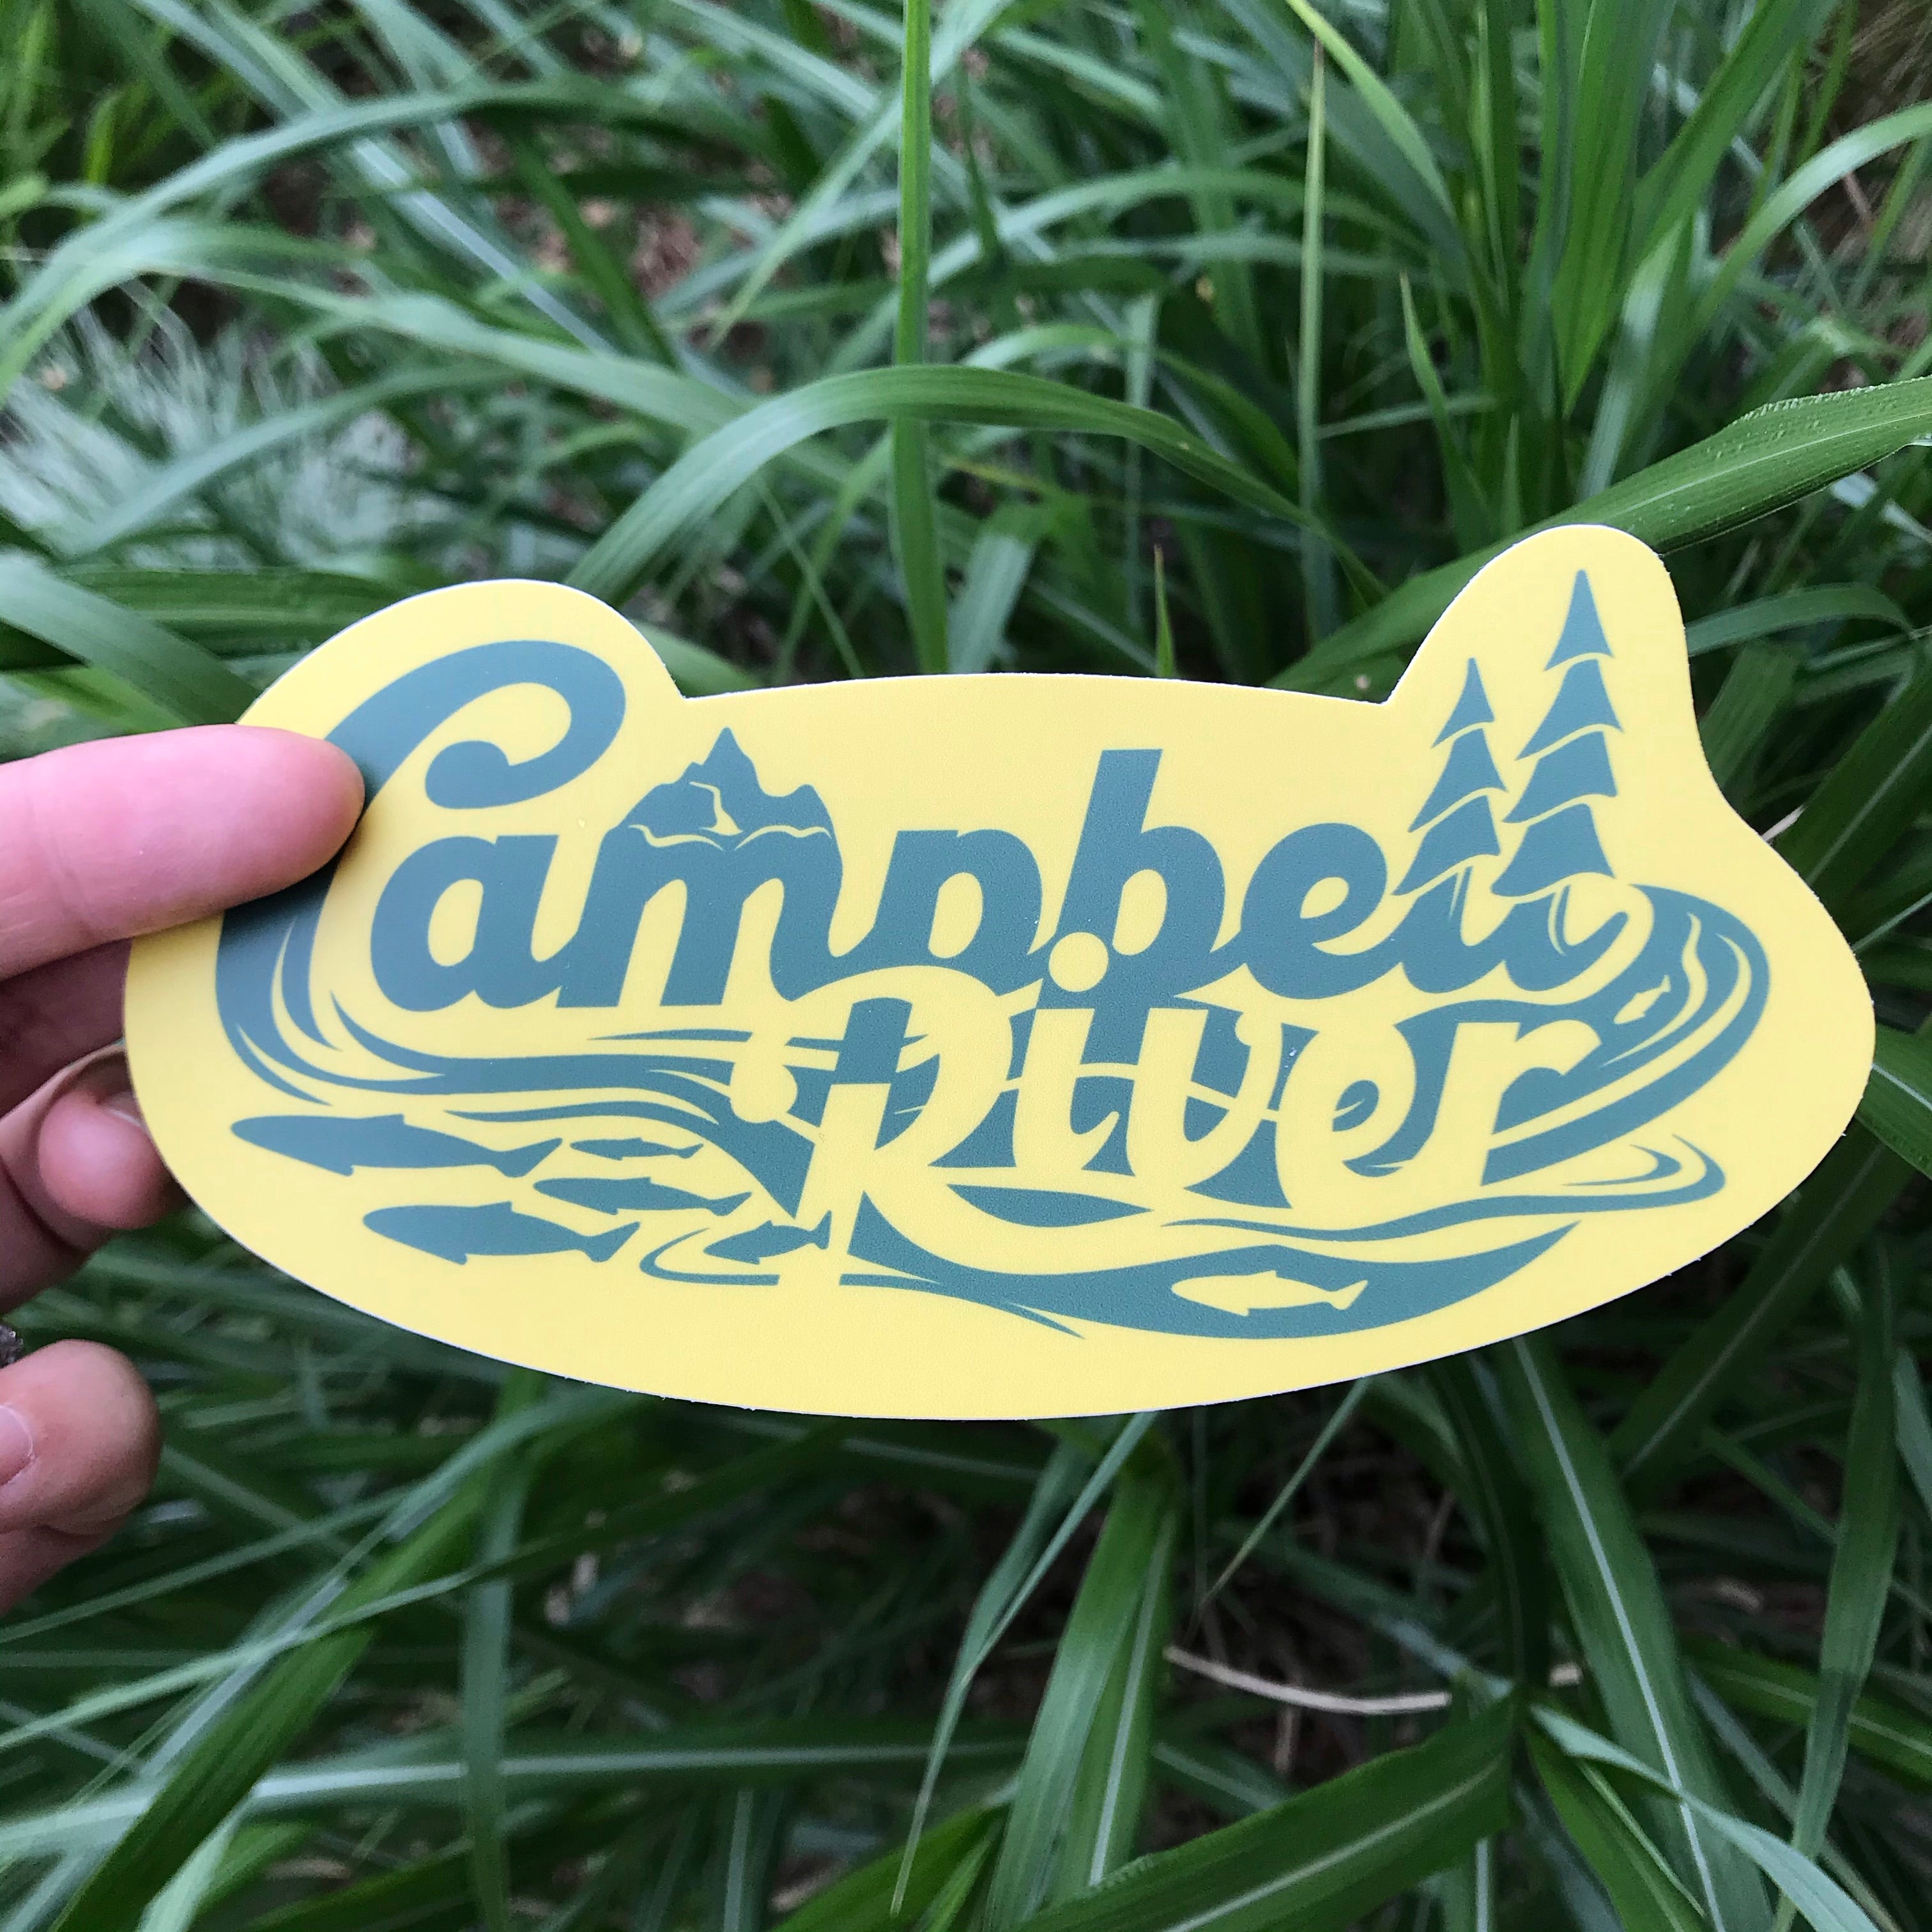 Campbell River Retro Sticker